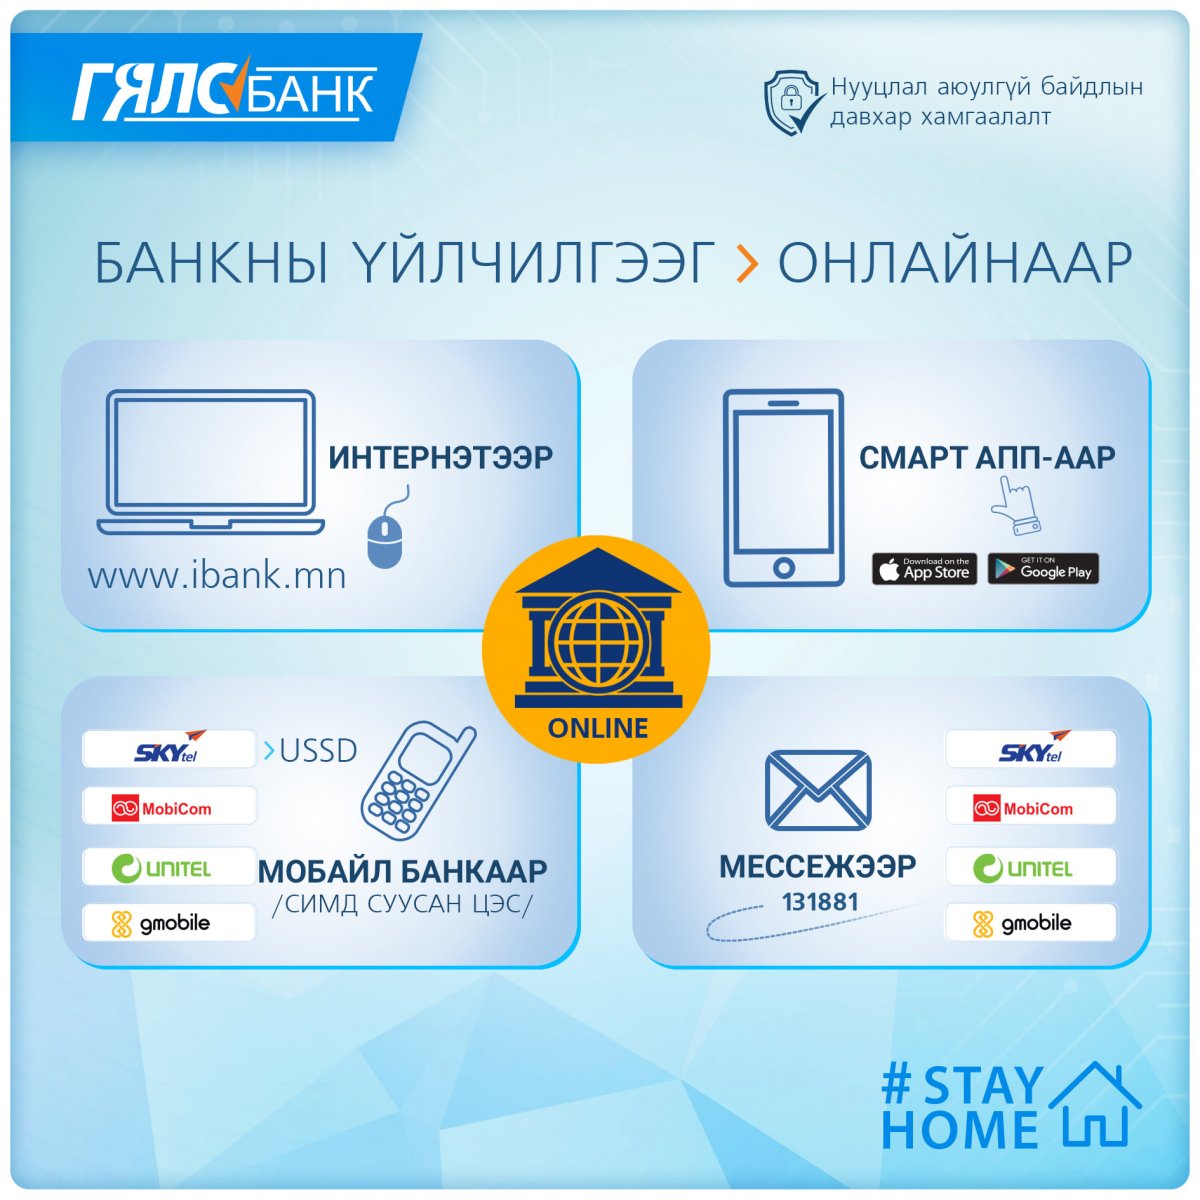 Төрийн банкны үйлчилгээг гэрээсээ цахим сувгуудаа ашиглан онлайнаар авах боломжтой